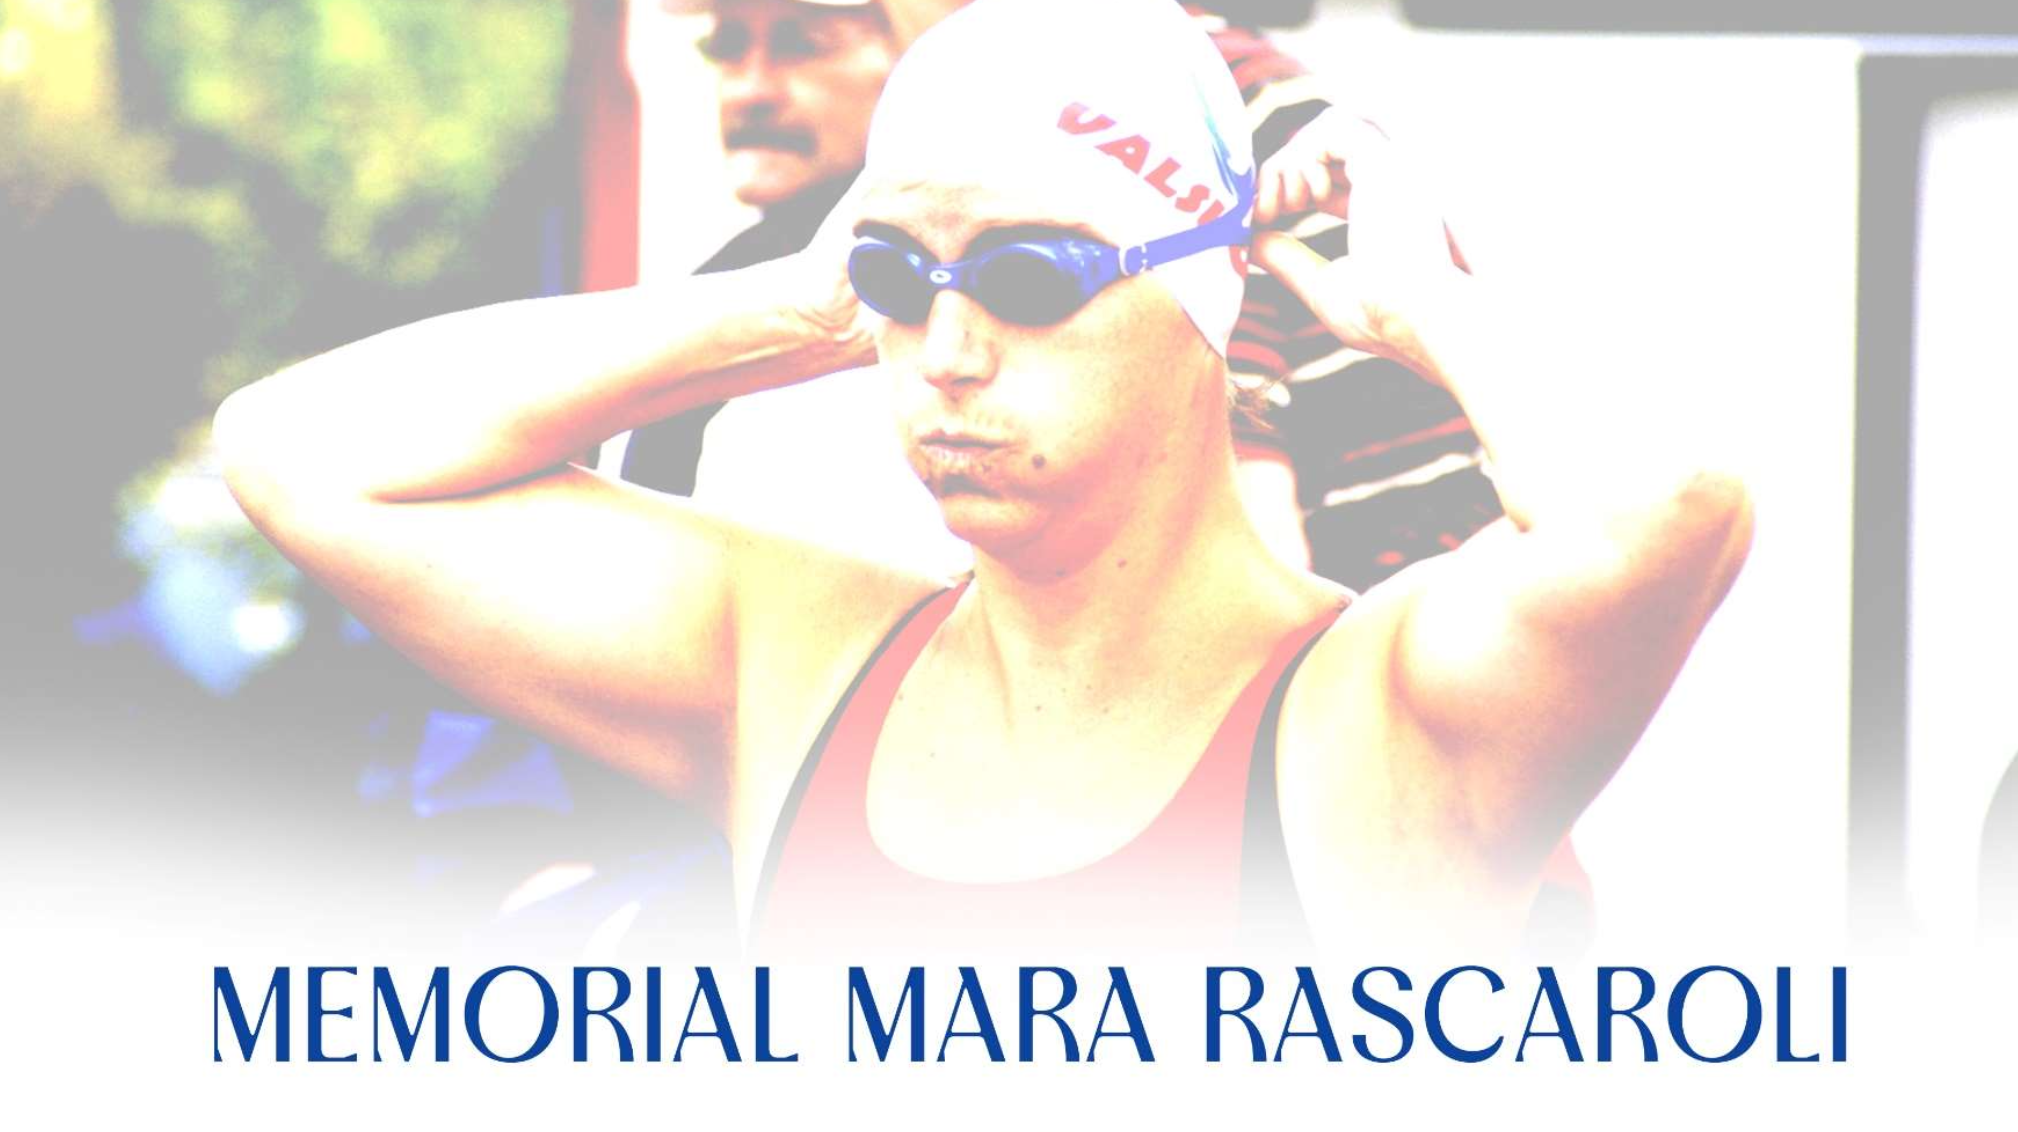 Scopri di più sull'articolo Memorial Mara Rascaroli